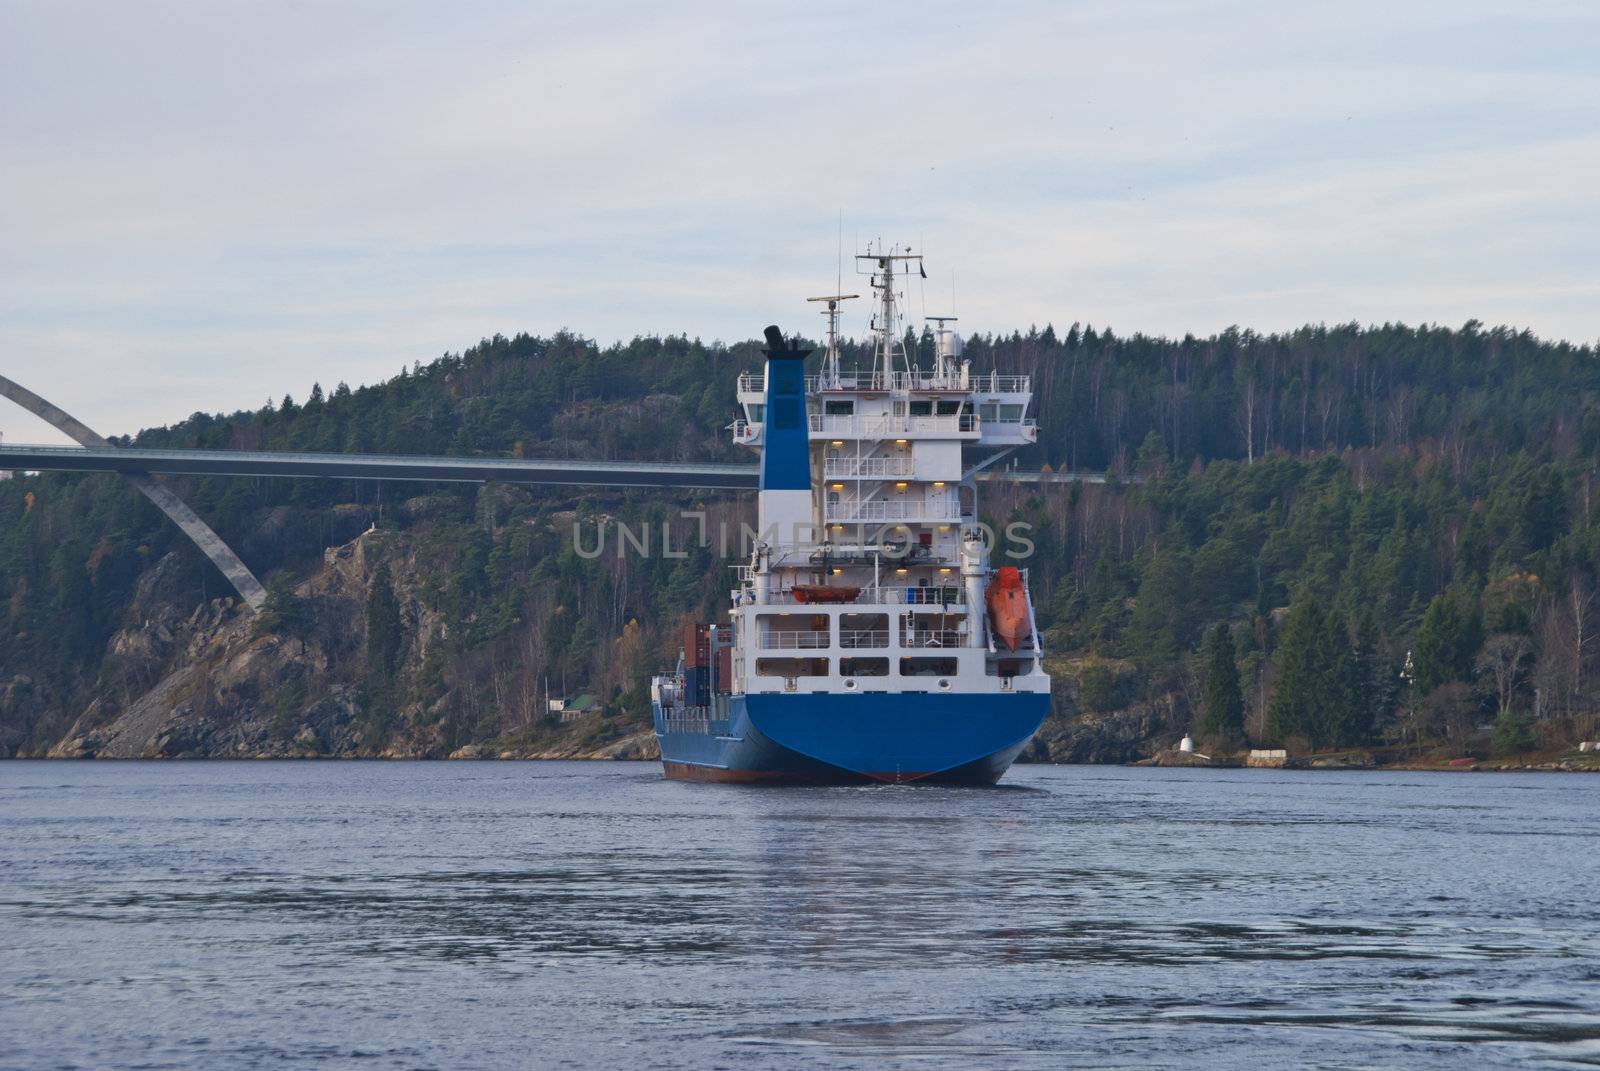 container ship under svinesund bridge, image 18 by steirus